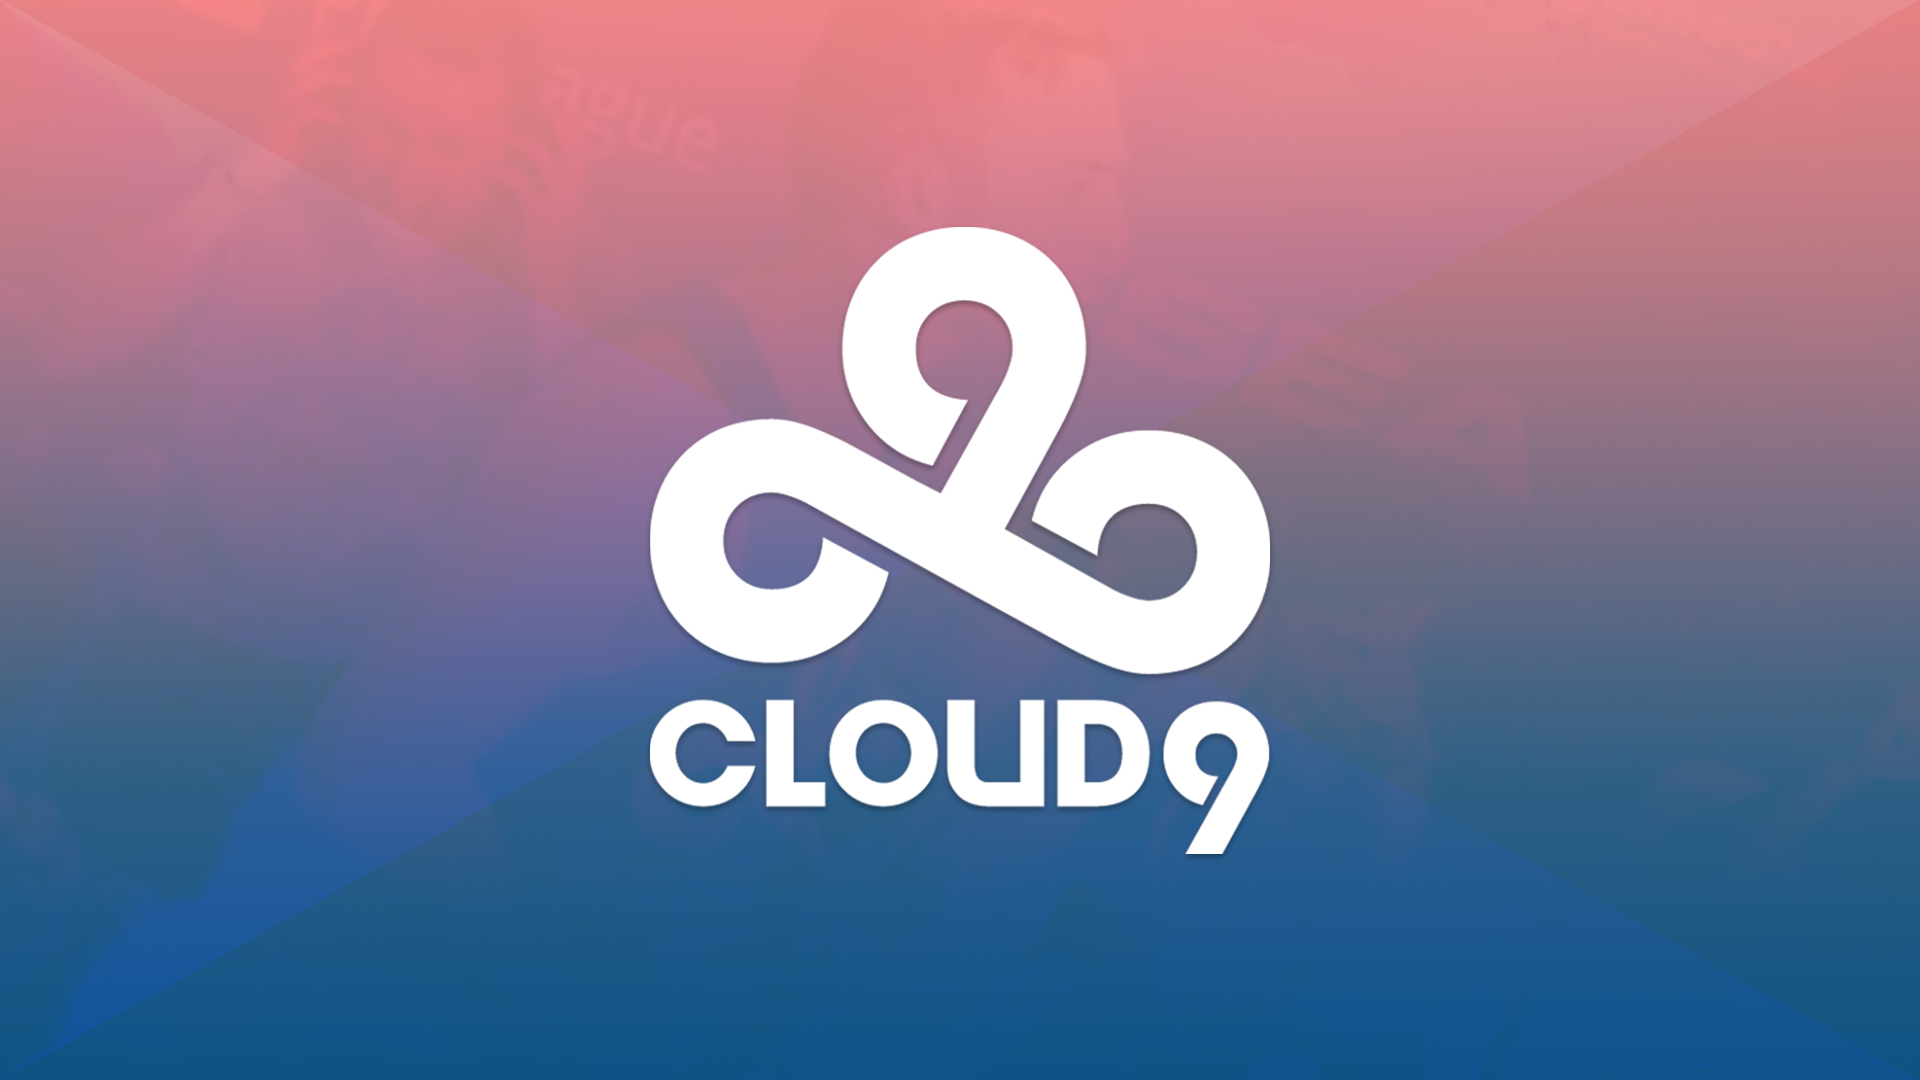 Клауд тим. Клоуд 9. Клауд 9 КС го. Широ Клауд 9. Логотип cloud9 CS go.